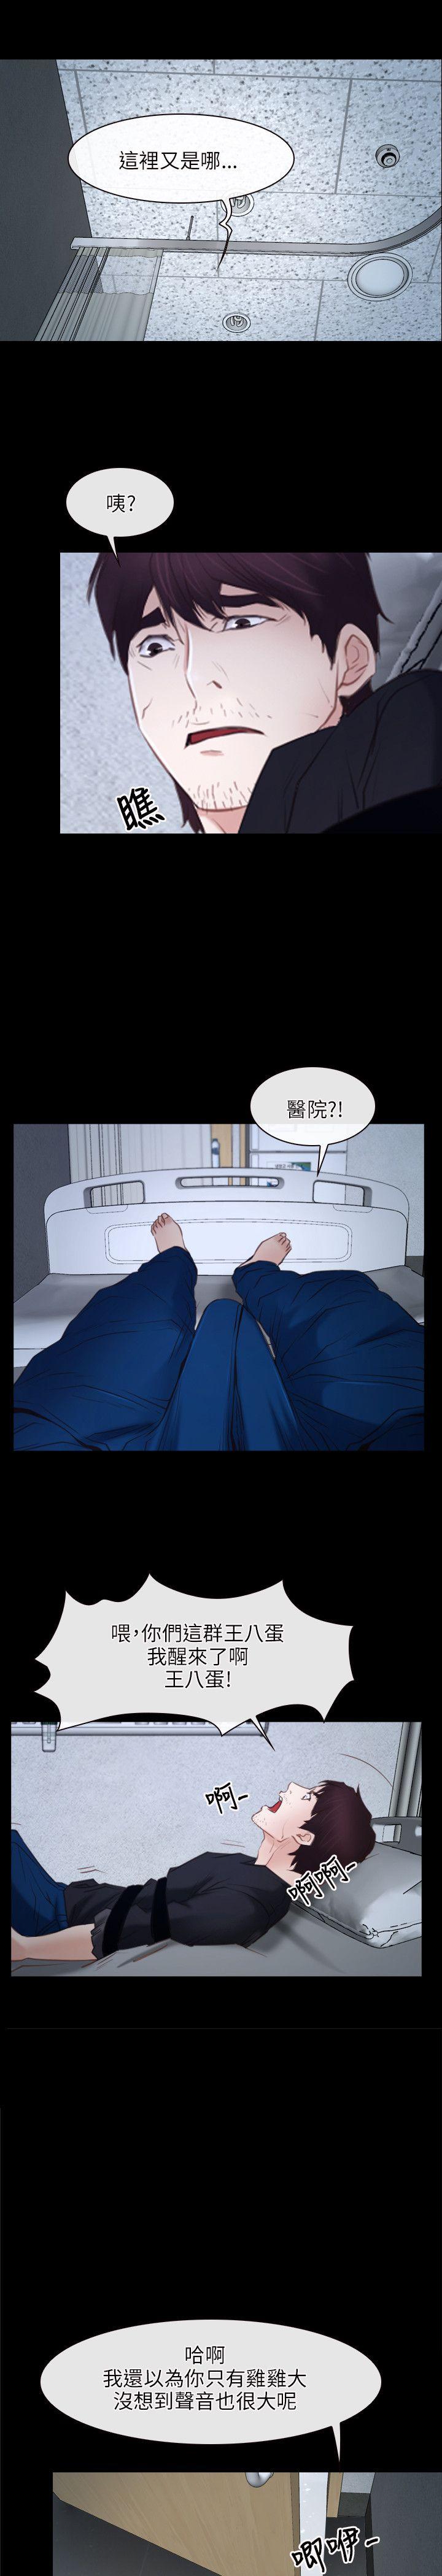 韩国污漫画 初戀物語 第24话 13